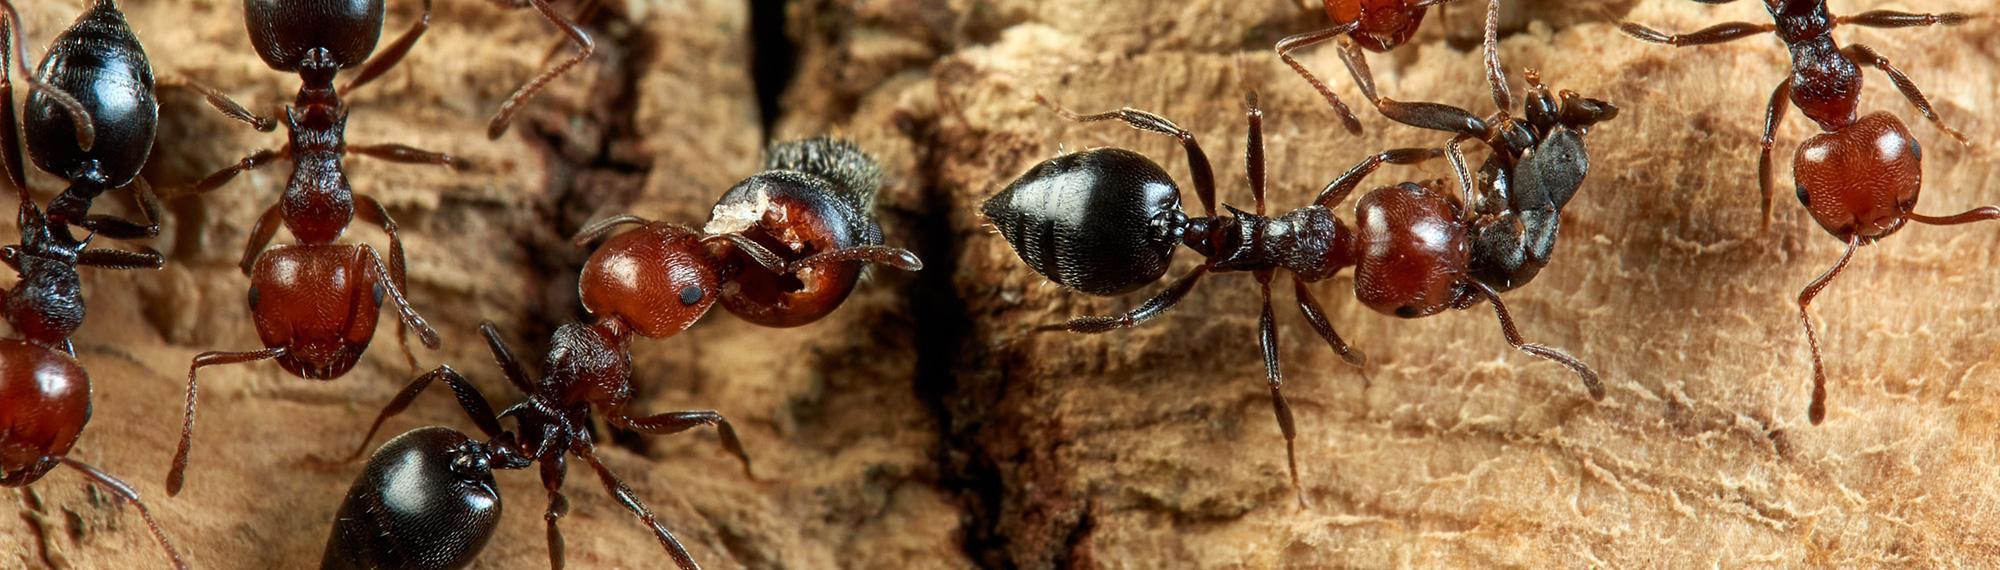 acrobat ants in newport news va